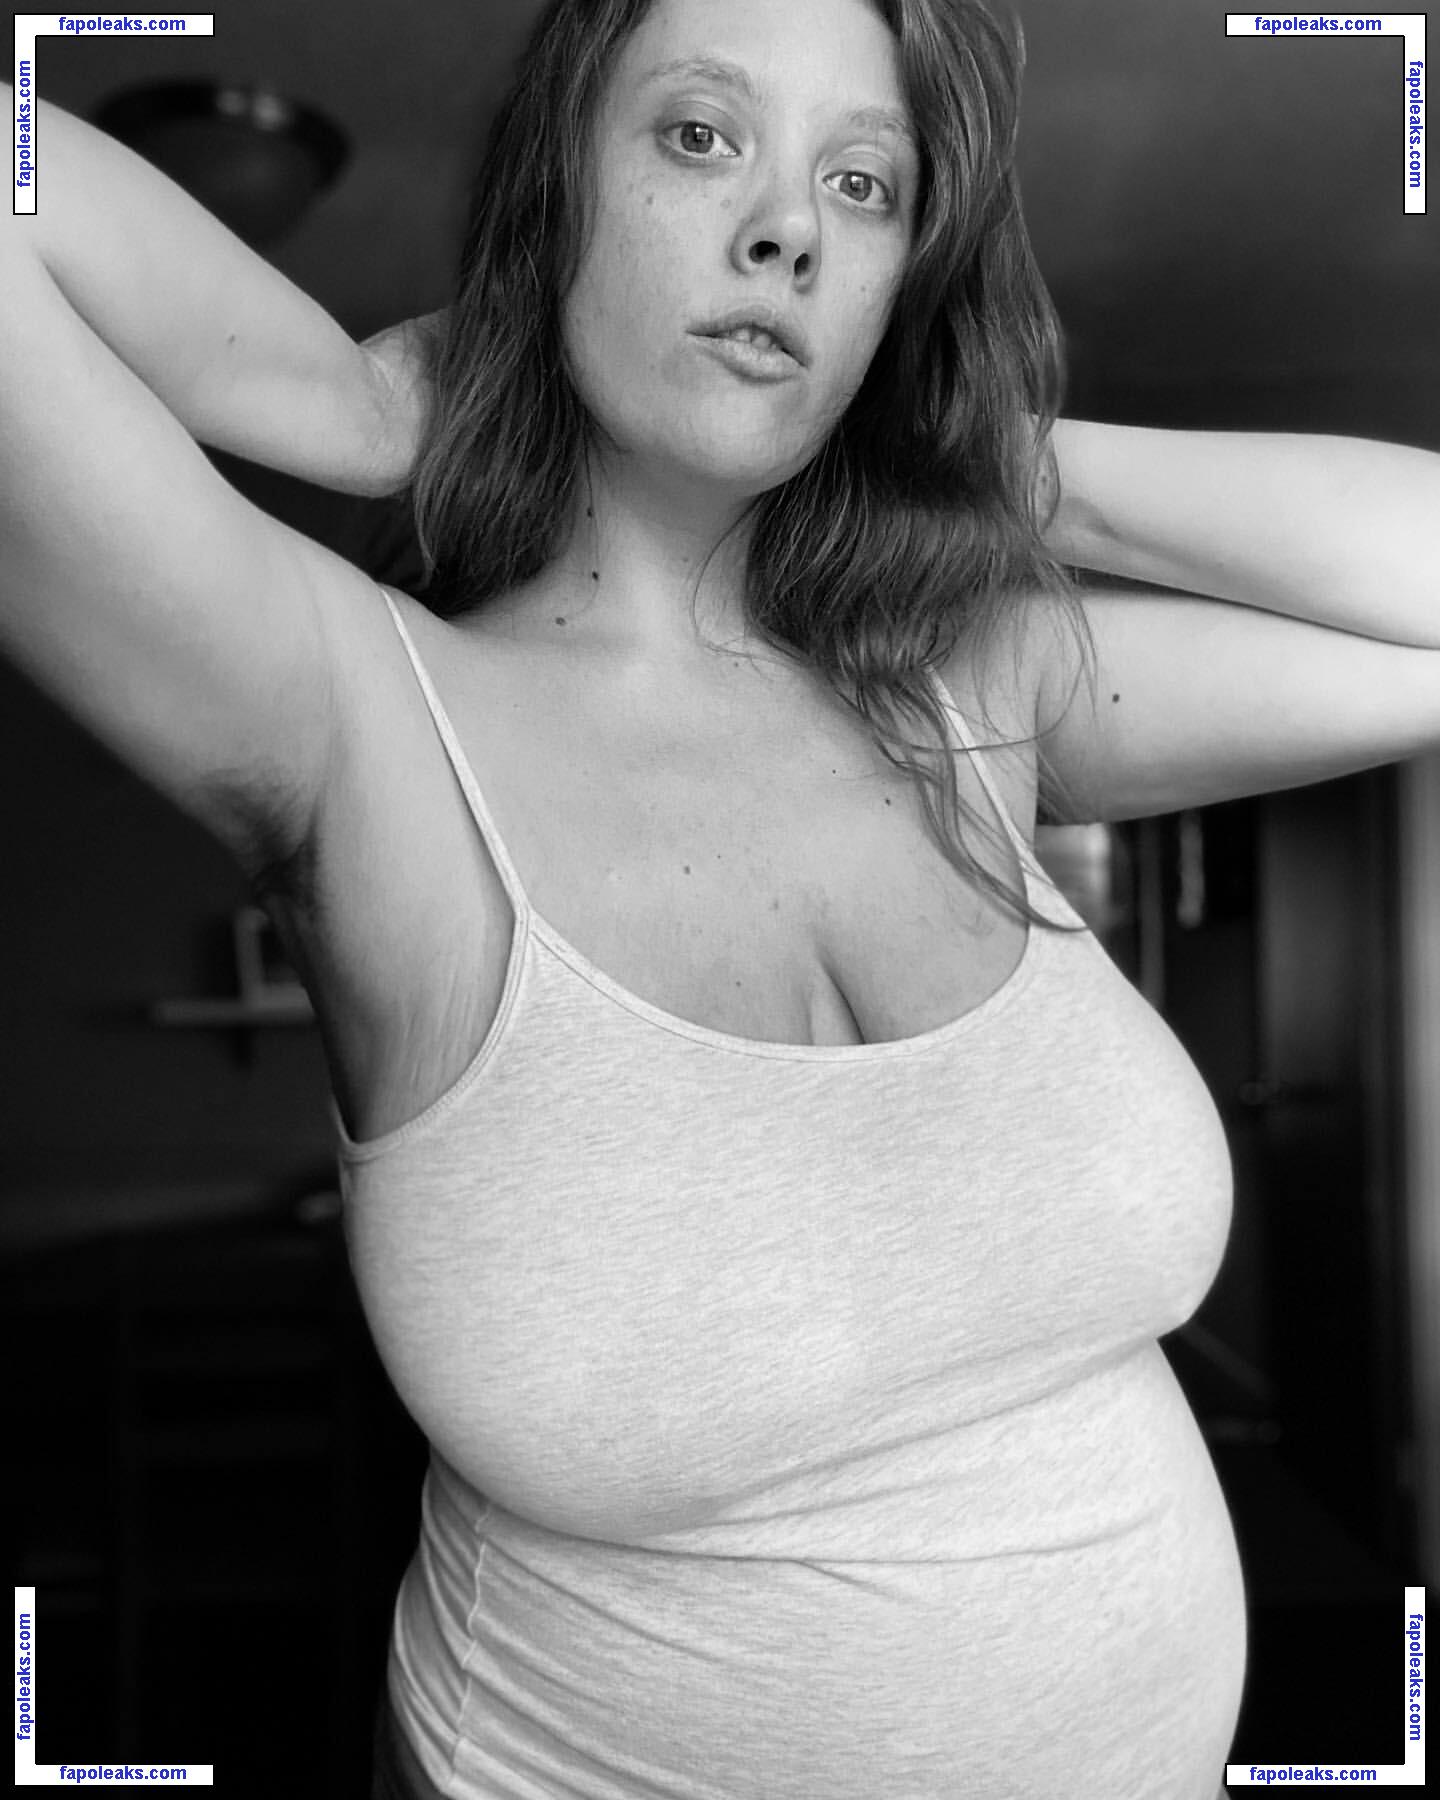 Ivie Walker / iviewalker / iviewalkerr nude photo #0015 from OnlyFans